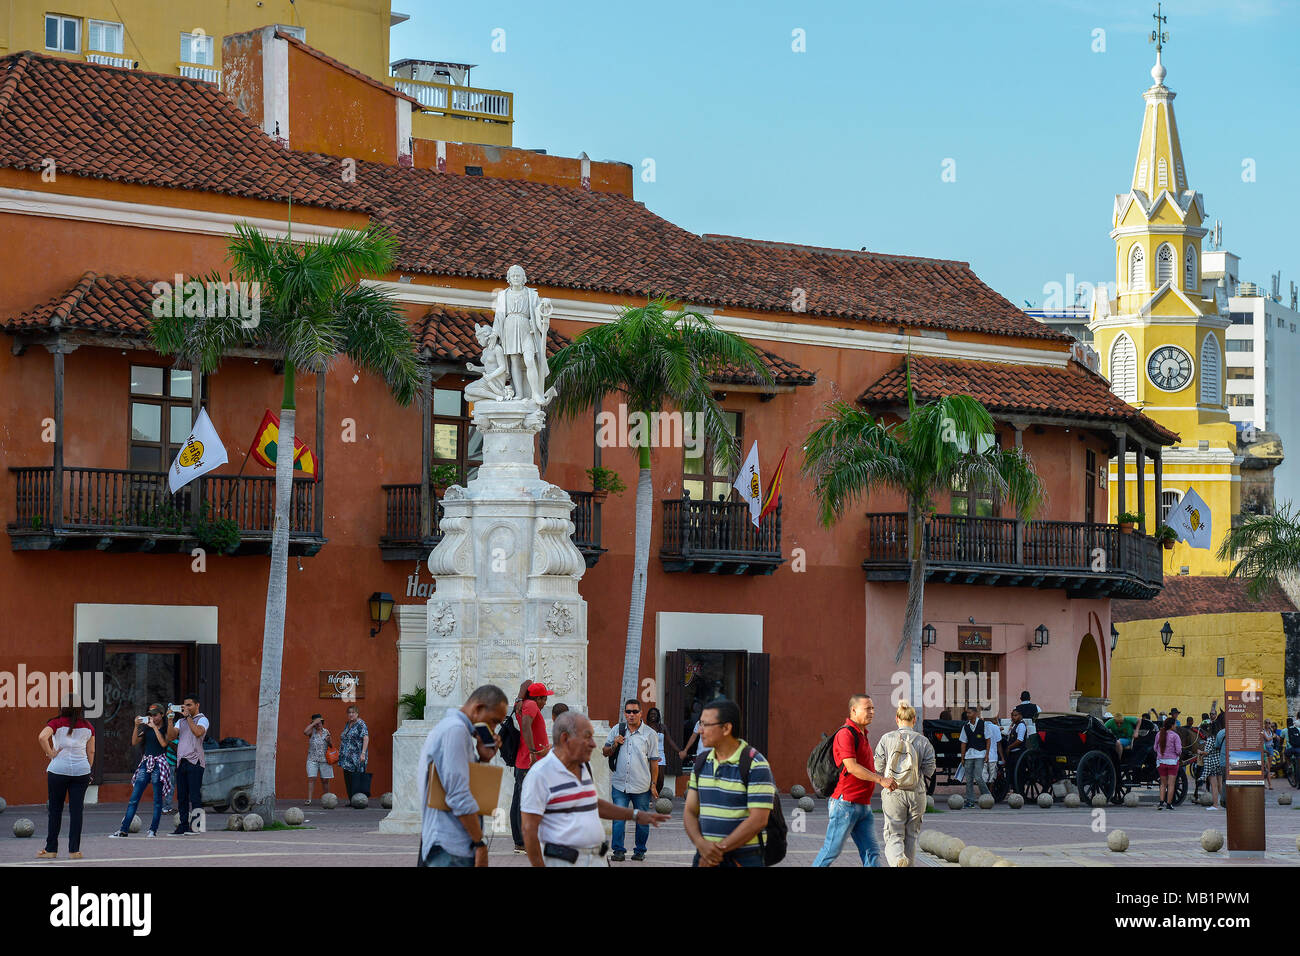 Cartagena, Colombia - 3 Agosto 2017: le persone non identificate a piedi nella parte anteriore del monumento a Cristoforo Colombo a Cartagena, Colombia. Foto Stock